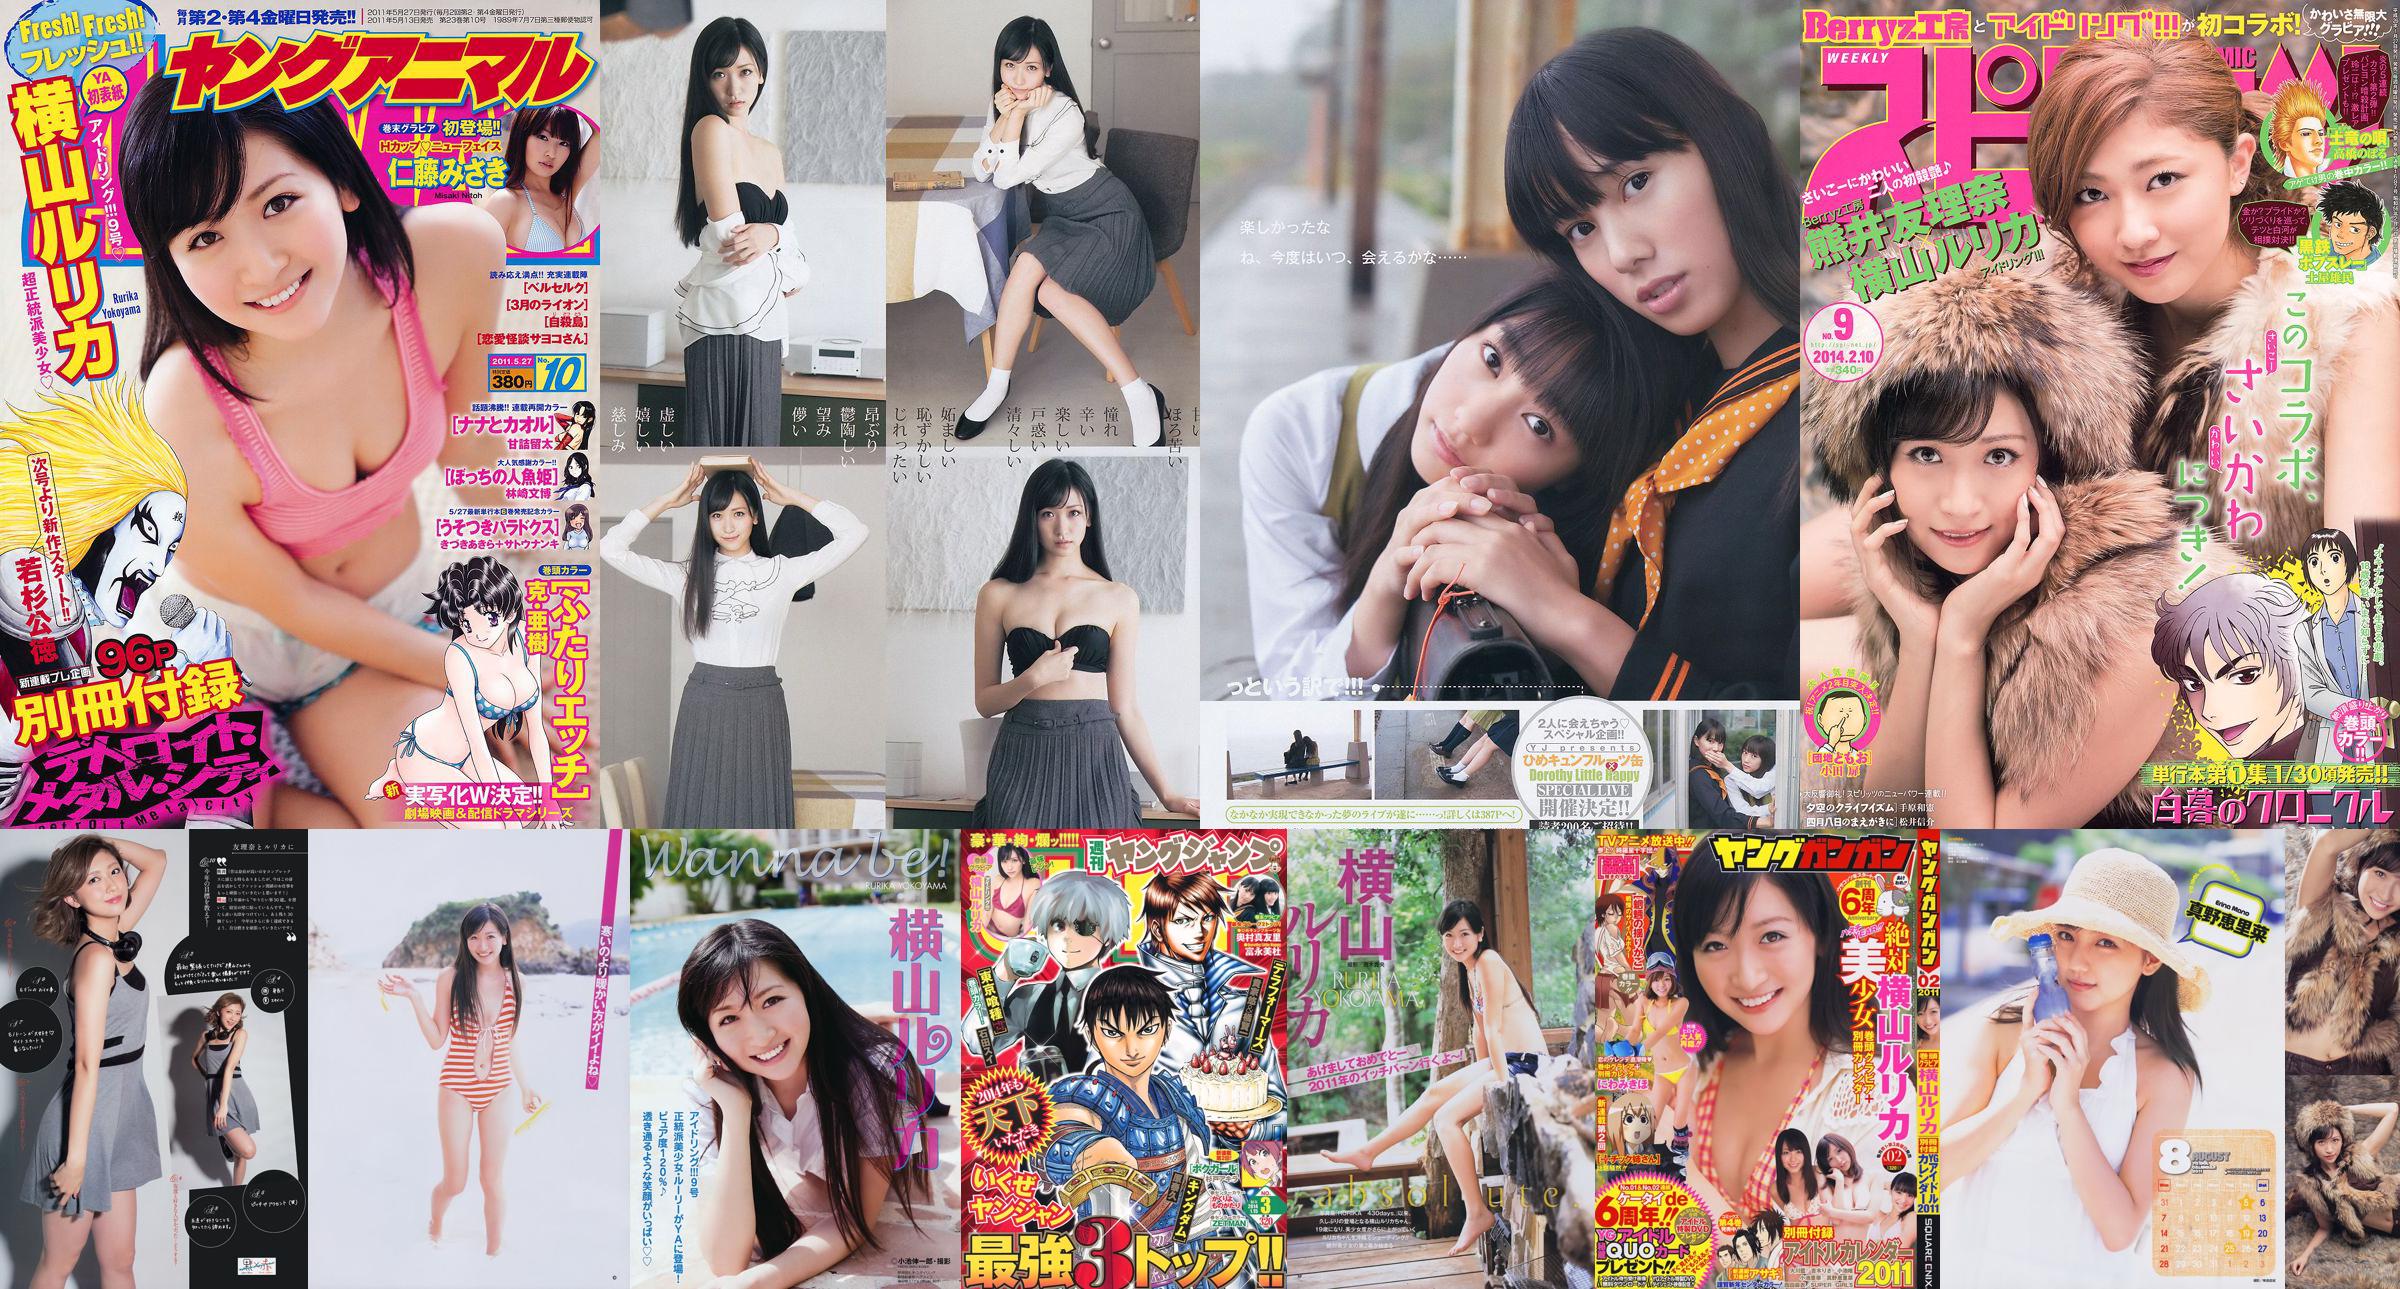 [Young Gangan] Rurika Yokoyama 2011 No.02 Photo Magazine No.269aba Page 1